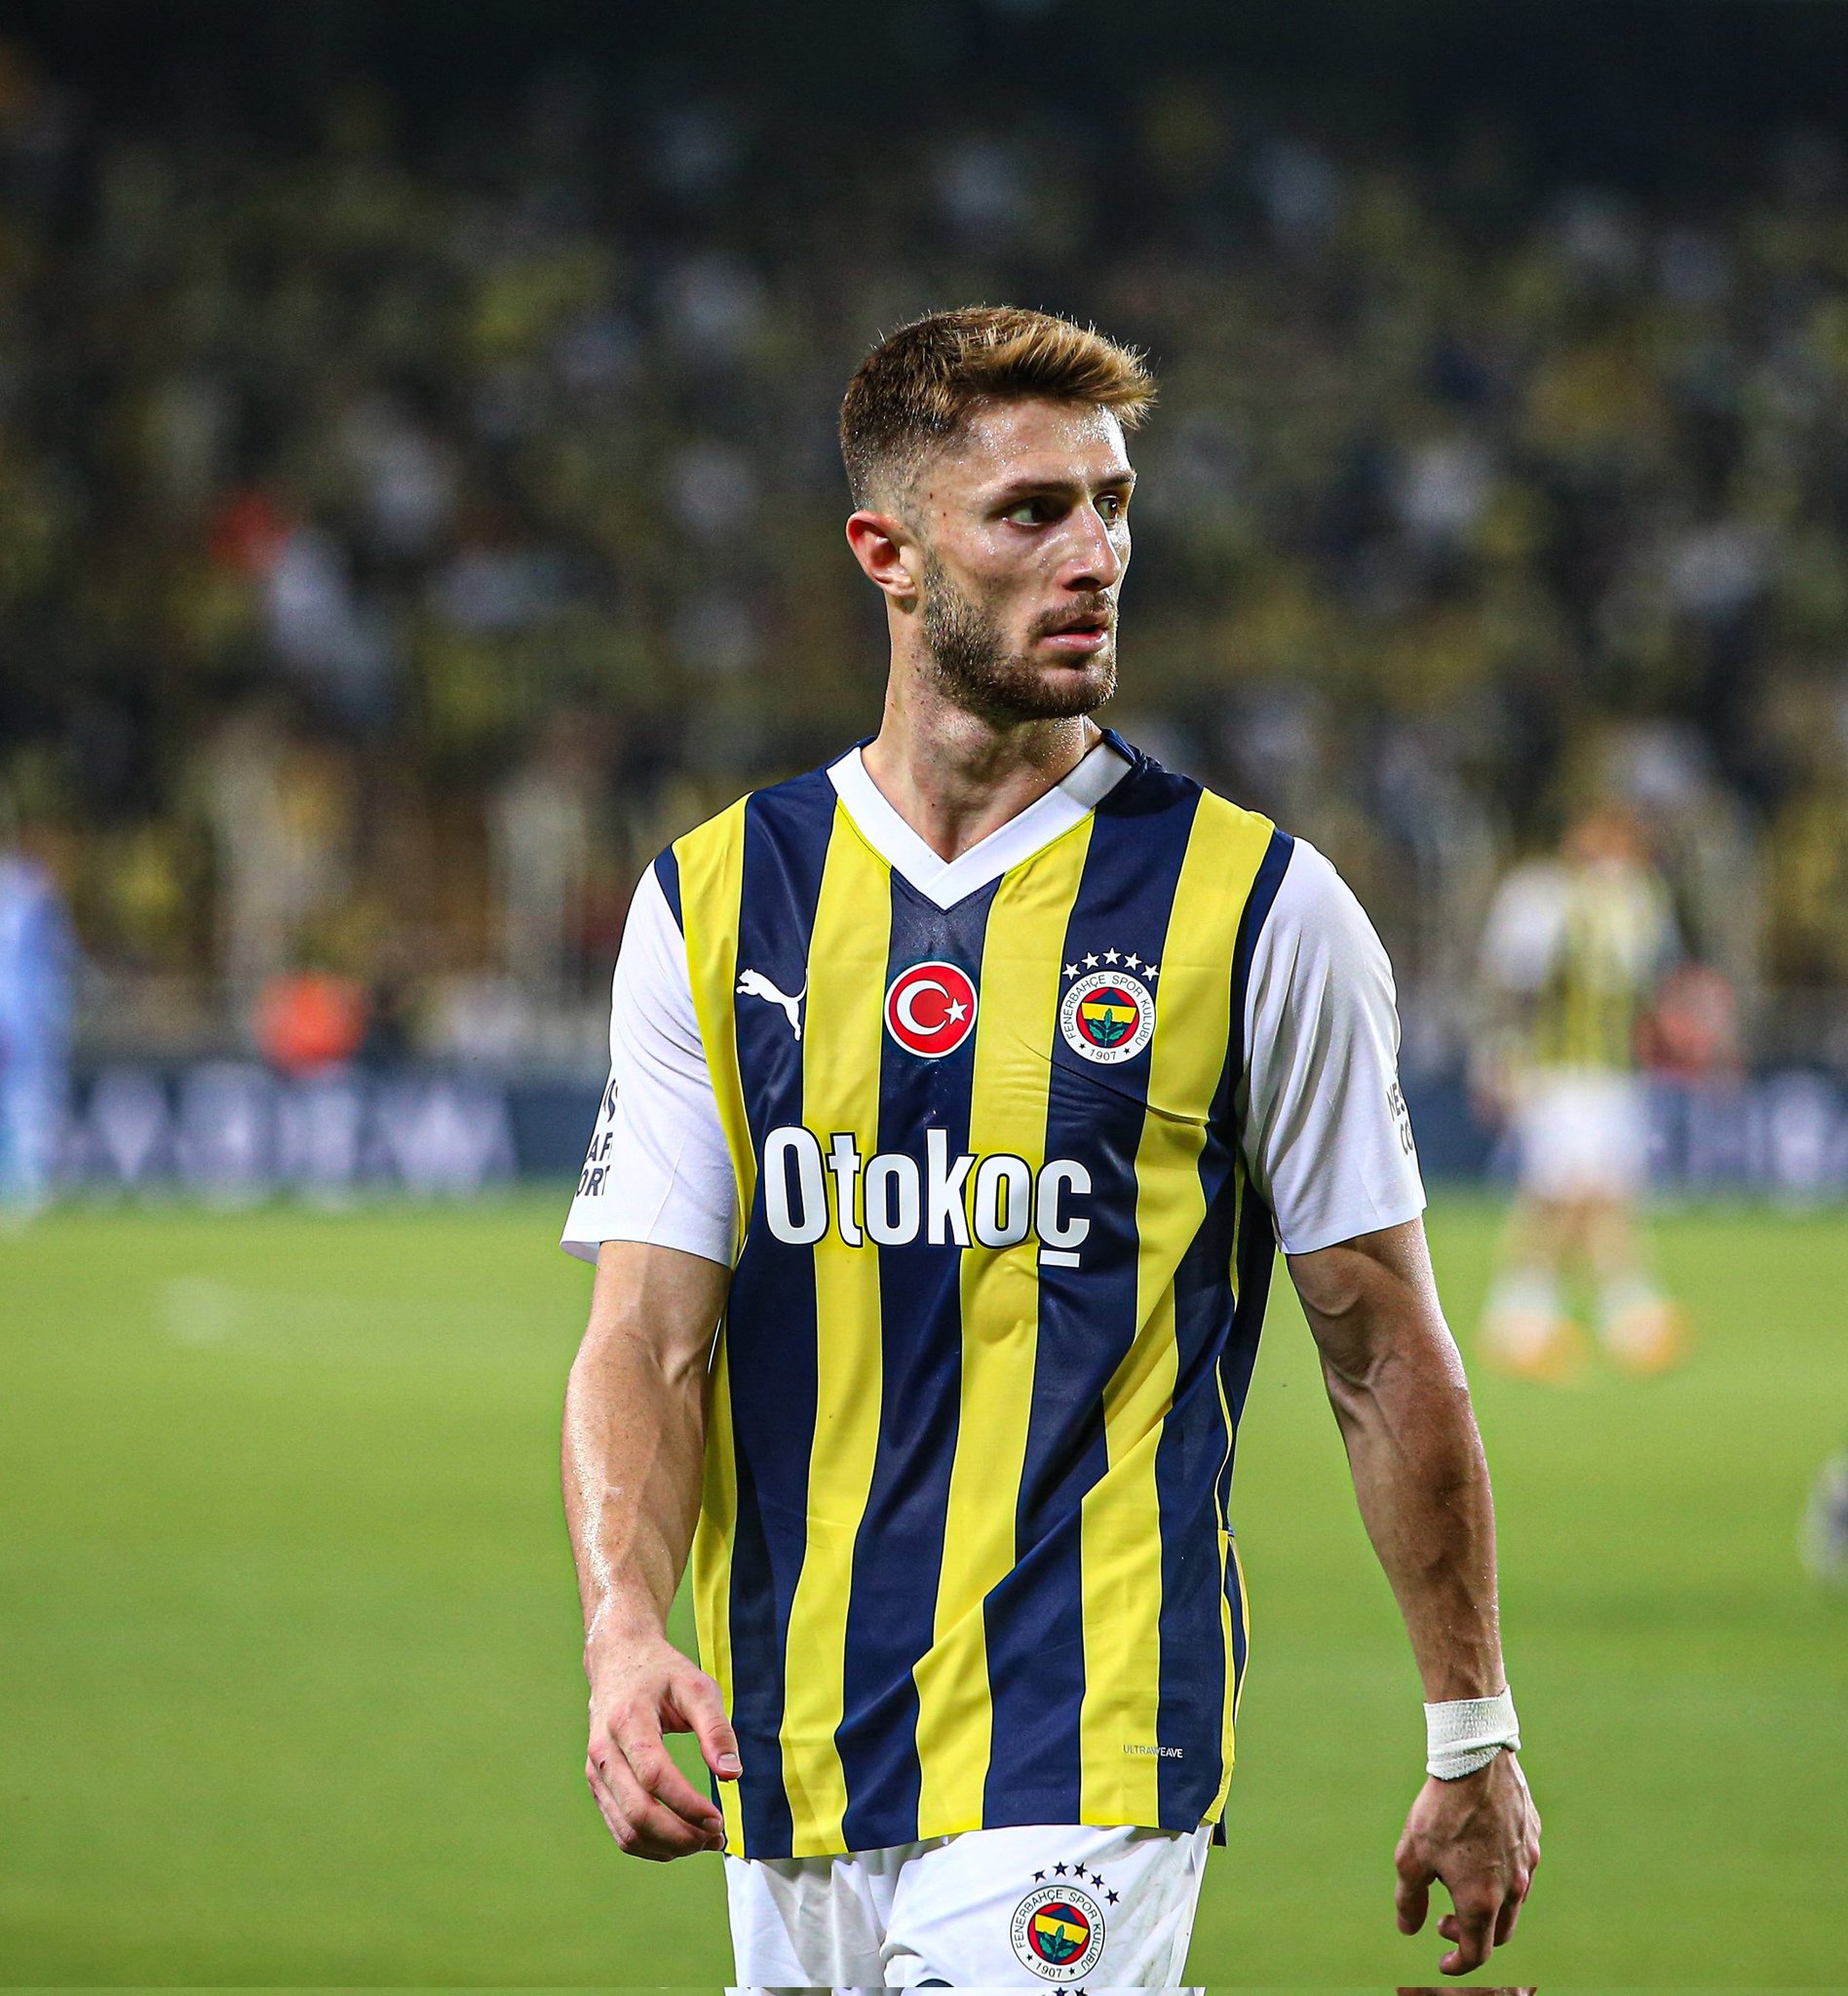 Fenerbahçe vs Zenit: A Clash of Football Giants